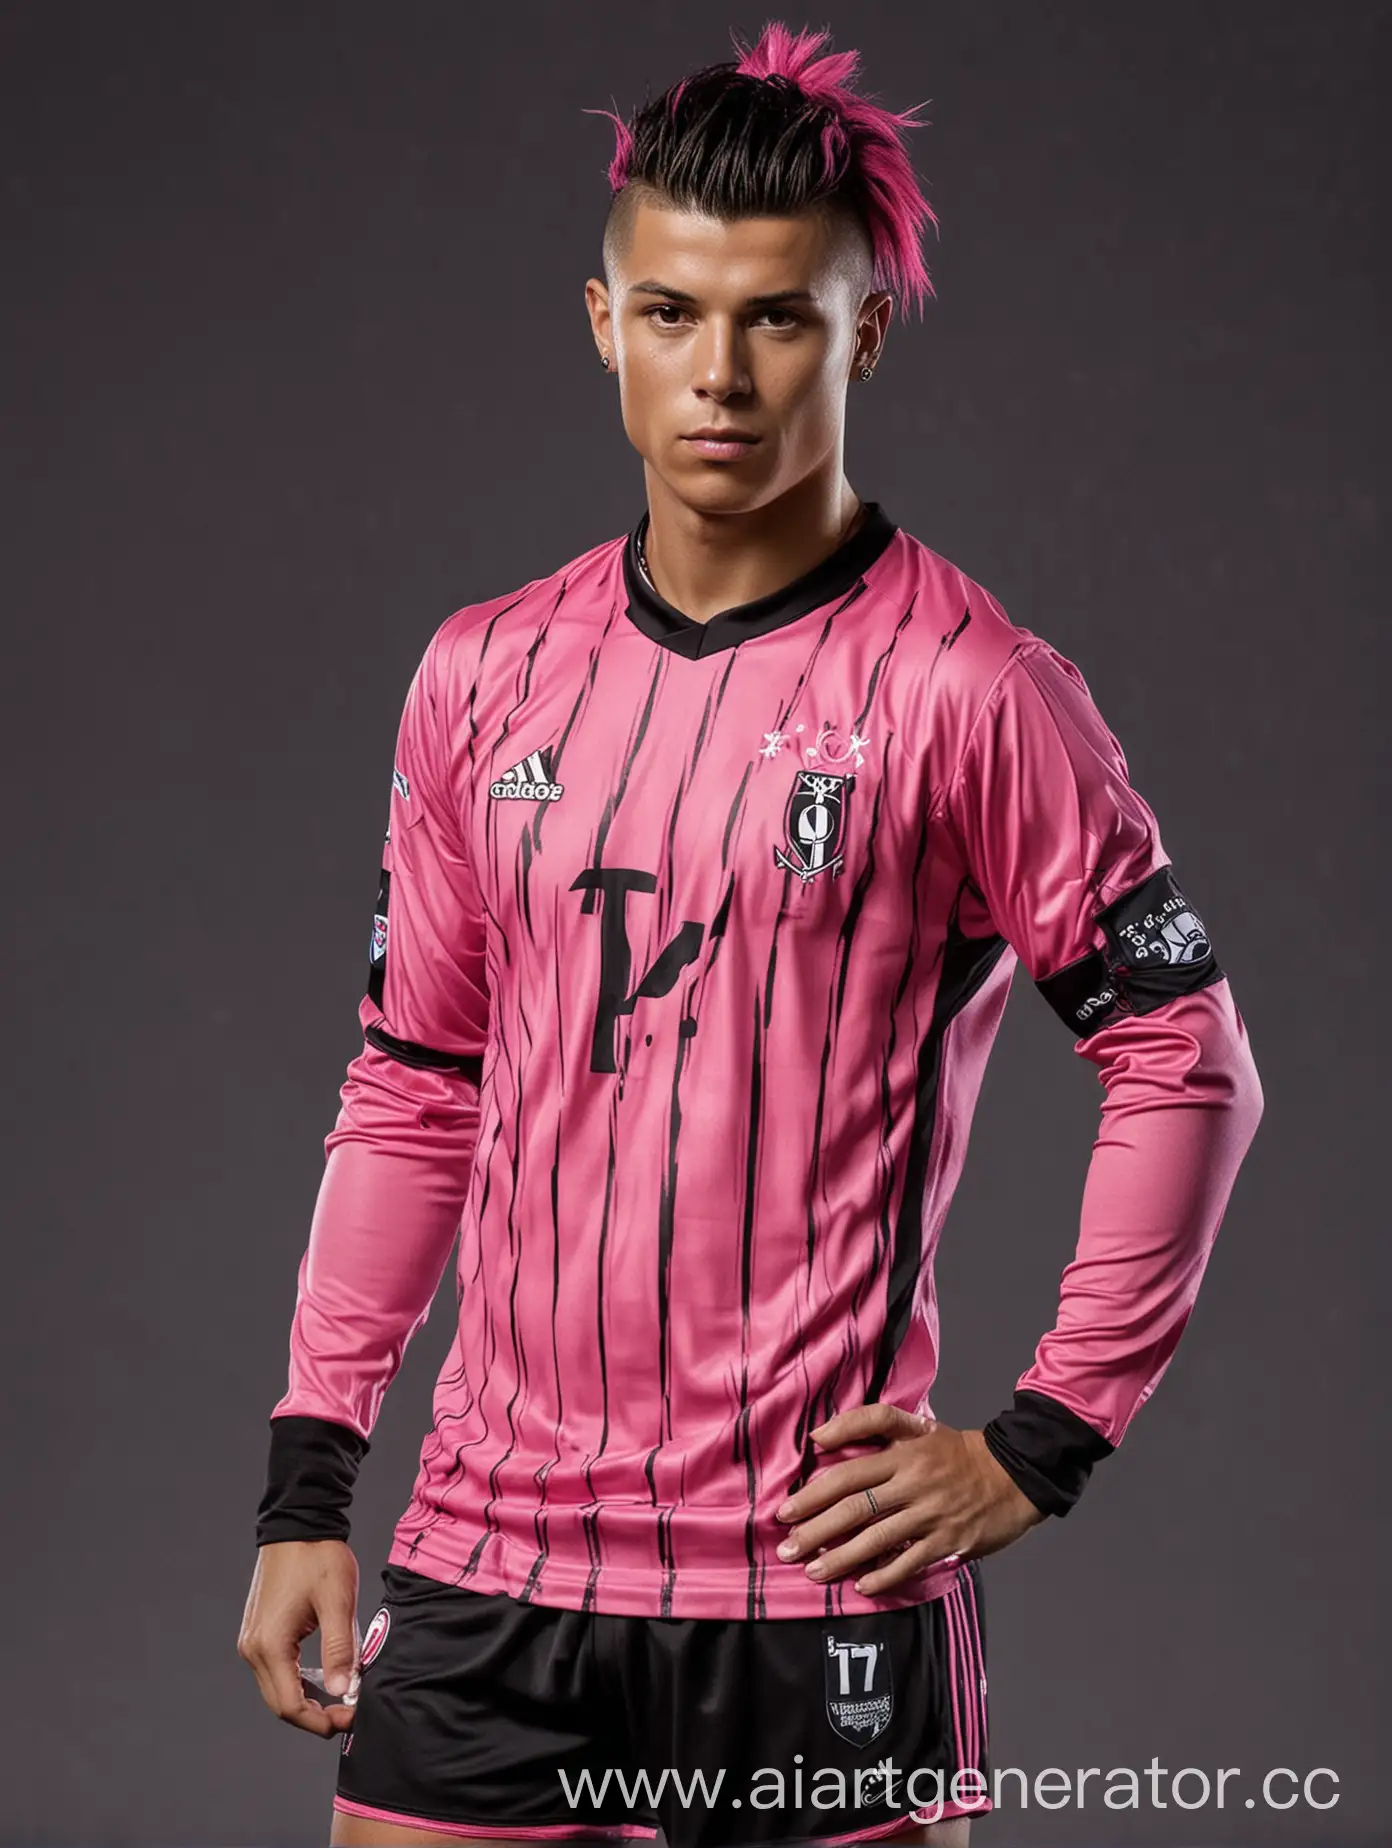 роналду в черно - розовой футбольной форме, в эмо образе, с пирсингом, с прической эмо